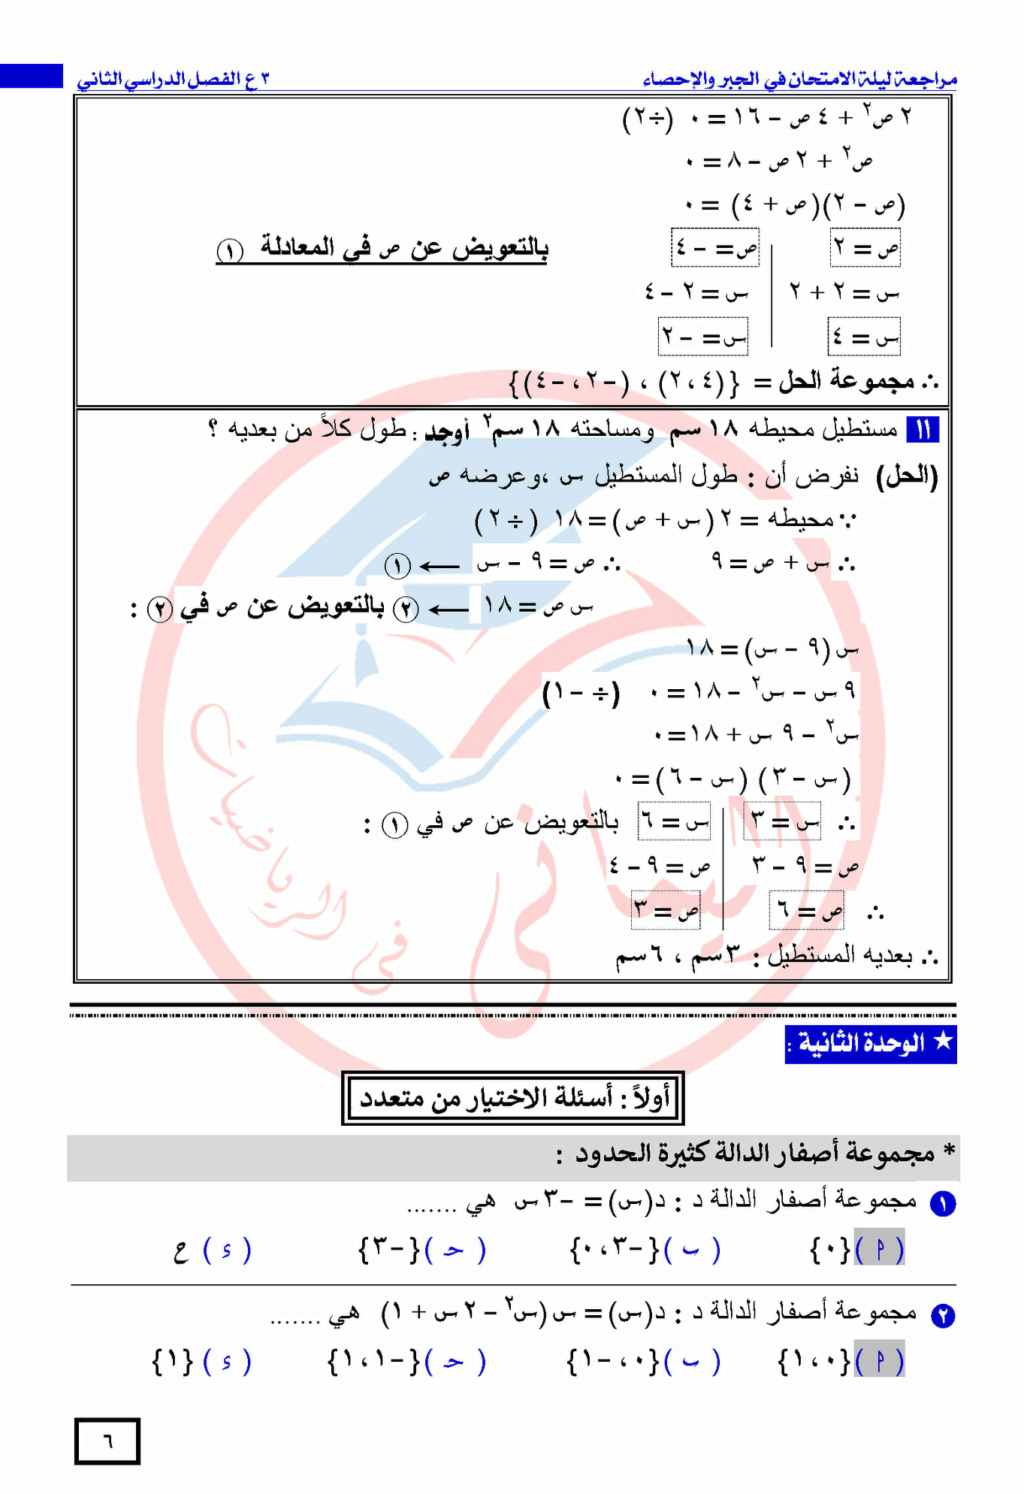 مراجعة الجبر و الإحصاء للشهادة الإعدادية أخر العام للأستاذ / أحمد اليمانى 18938410